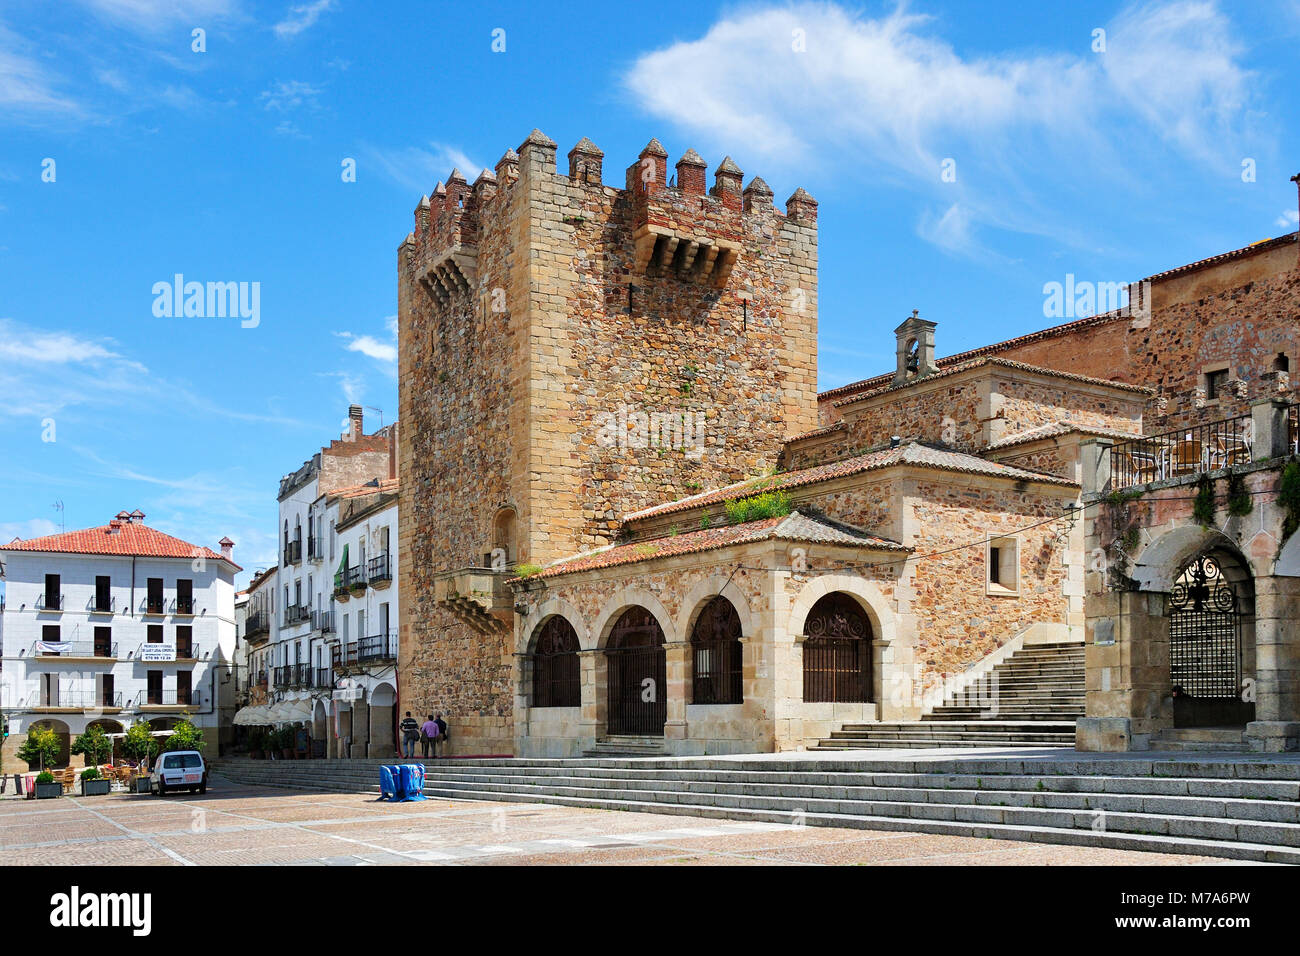 Cáceres, Site du patrimoine mondial de l'UNESCO. Espagne Banque D'Images